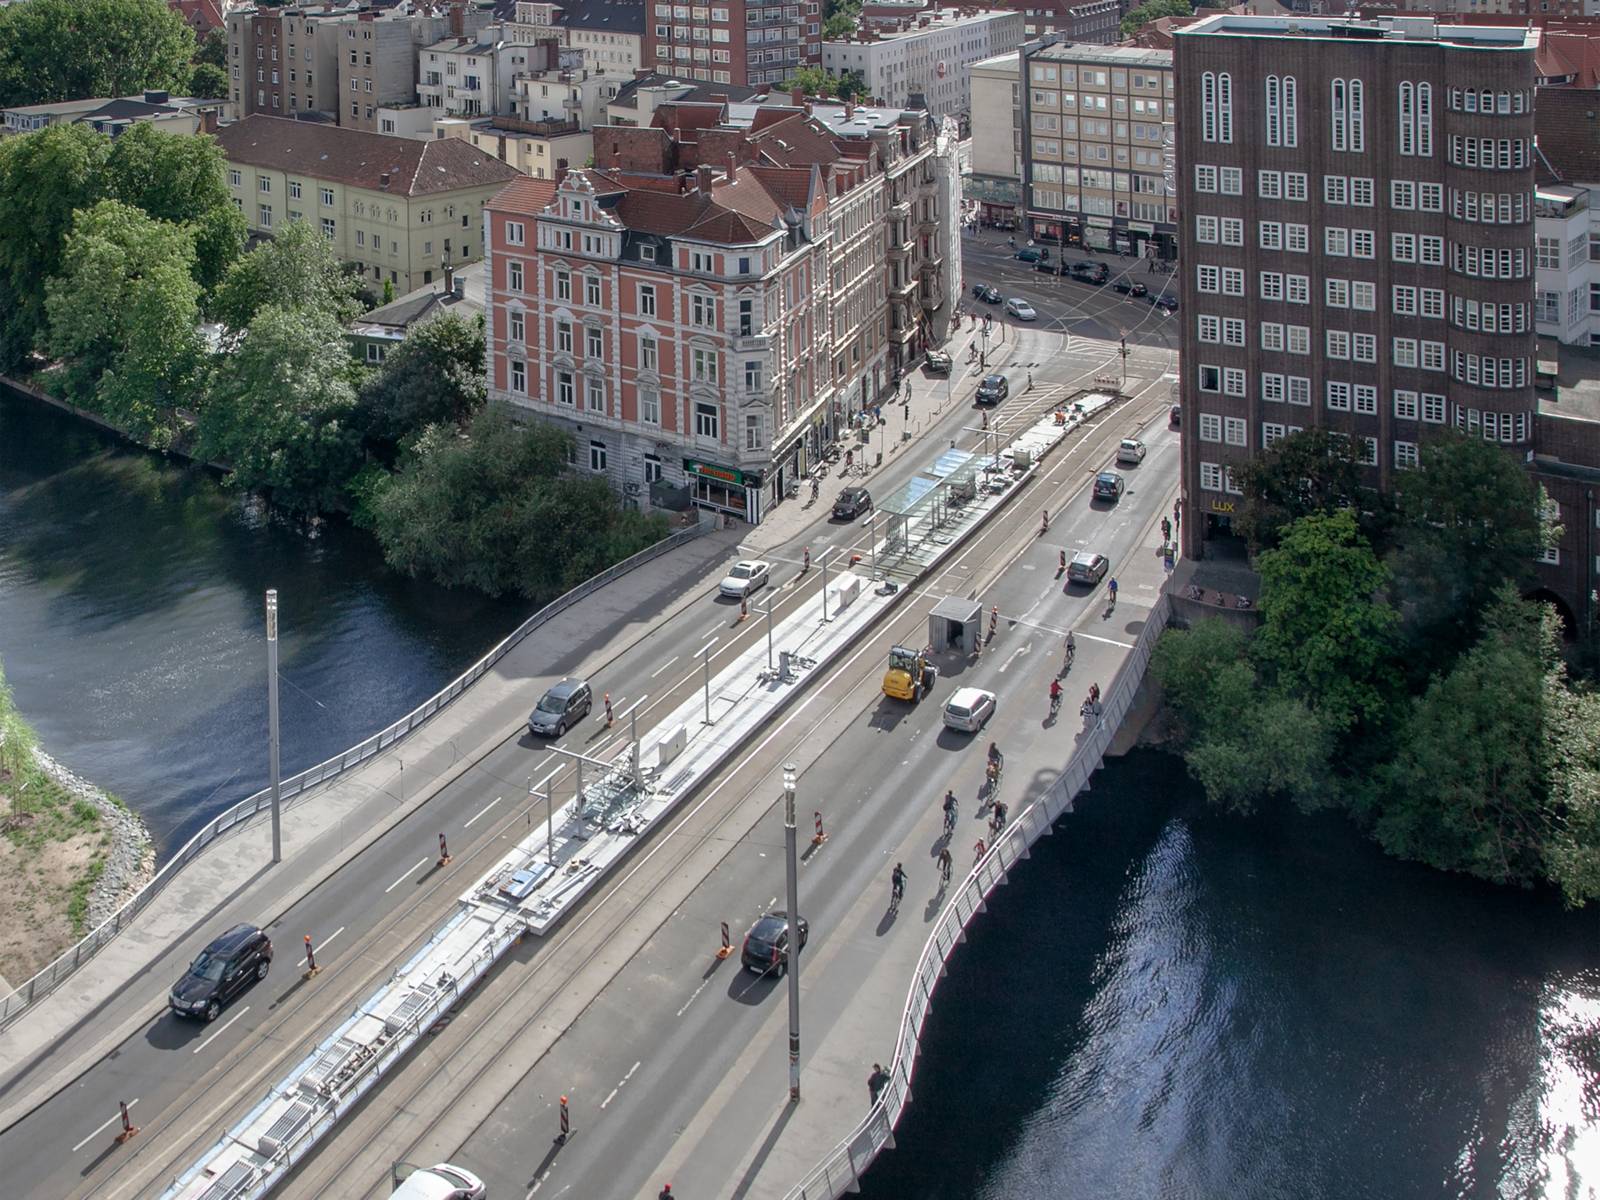 Bild von oben auf eine Brücke mit Straße und Autos, darunter ein Fluss, im Hintergrund Gebäude.